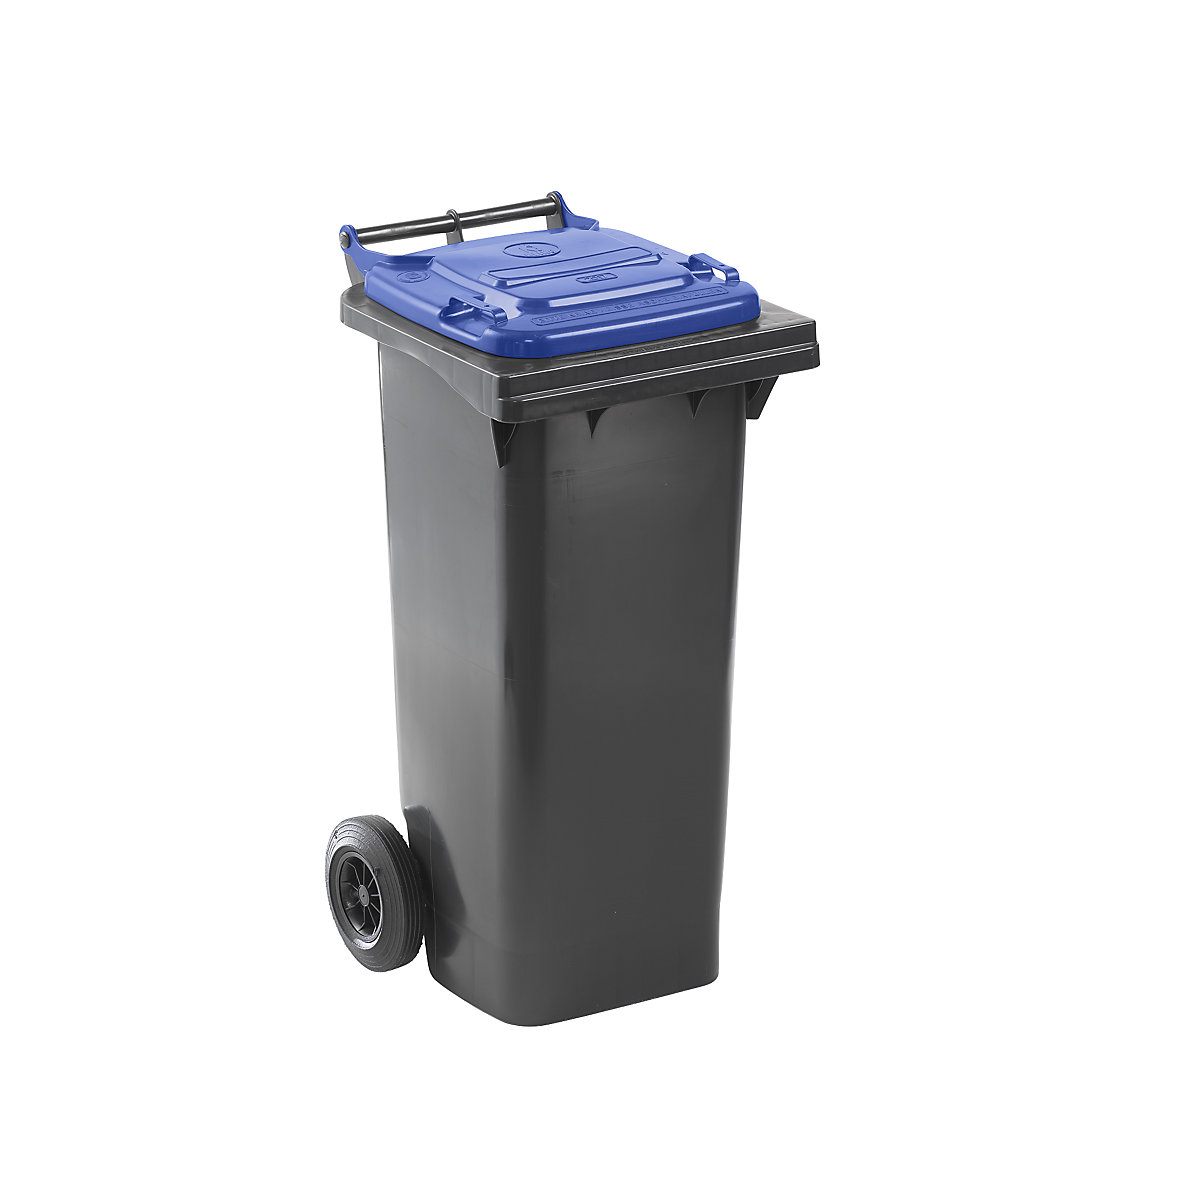 Nádoba na odpad podle ČSN EN 840, objem 80 l, š x v x h 448 x 975 x 530 mm, antracitová, víko modré-6